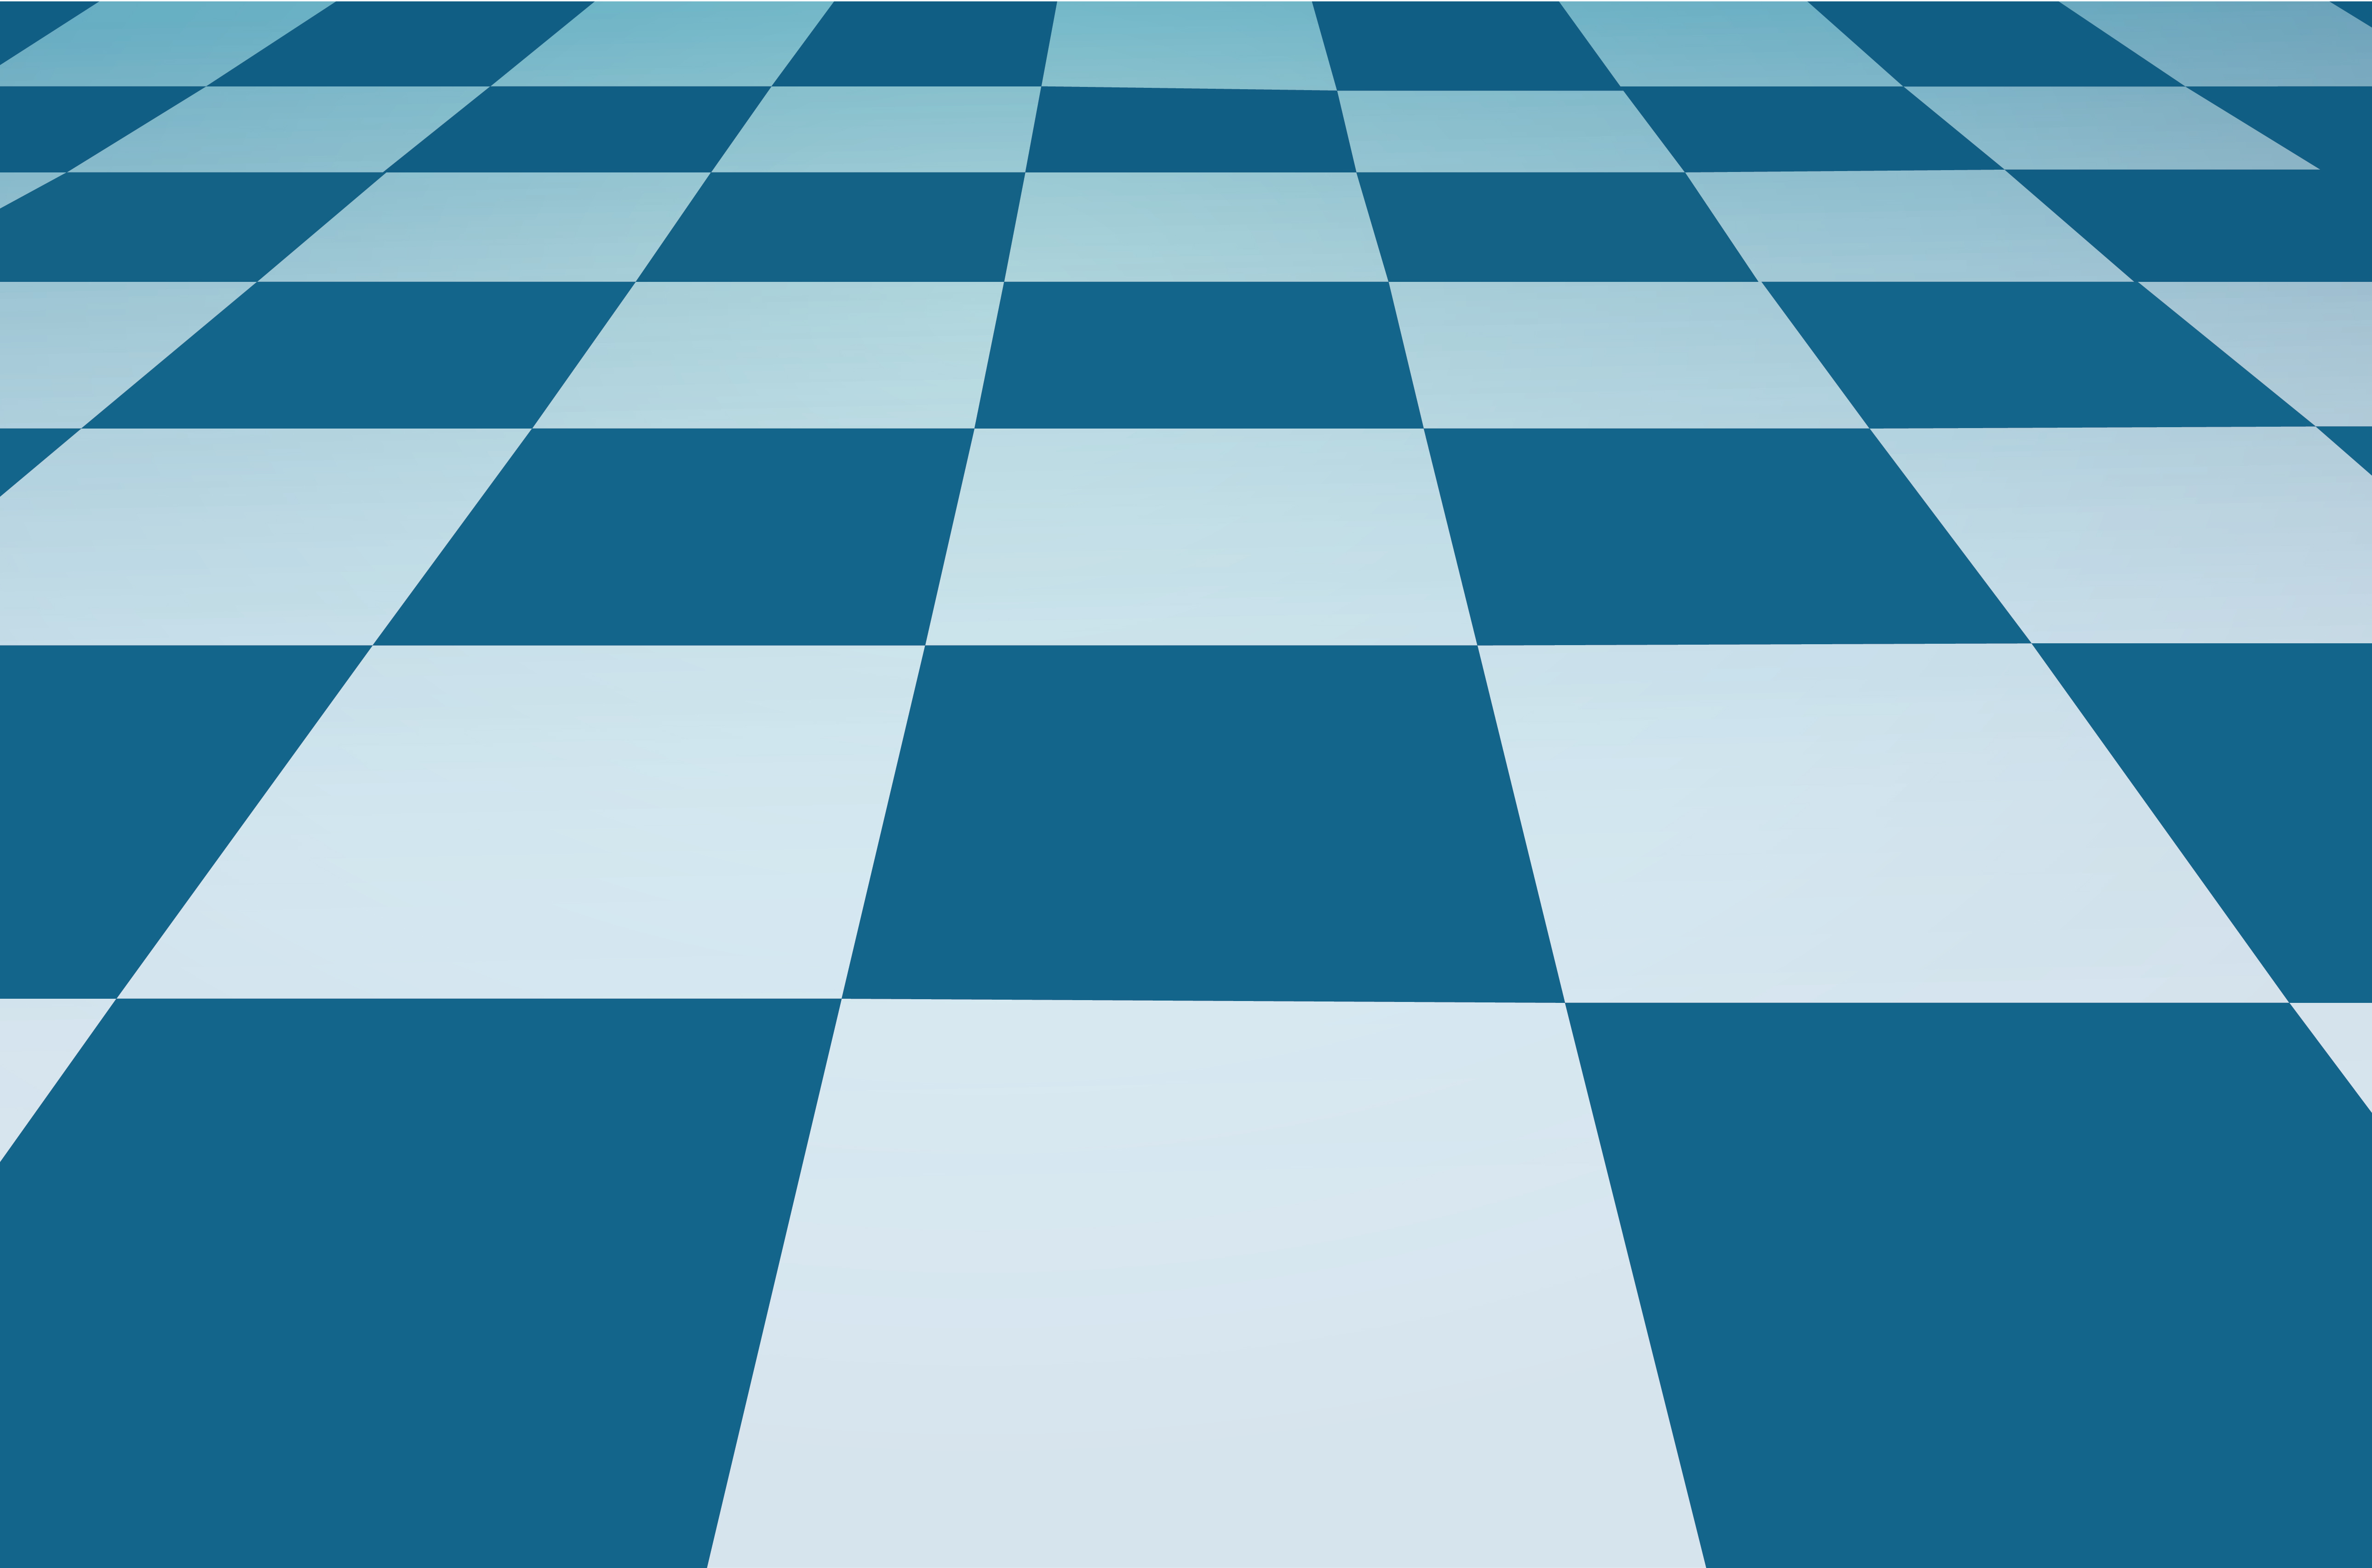 Partida De Xadrez De Fundo Azul Tabuleiro De Xadrez Renderizado Em 3d E  Relógio Em Jogo, Torneio De Xadrez, Fundo De Xadrez, Jogo De Xadrez Imagem  de plano de fundo para download